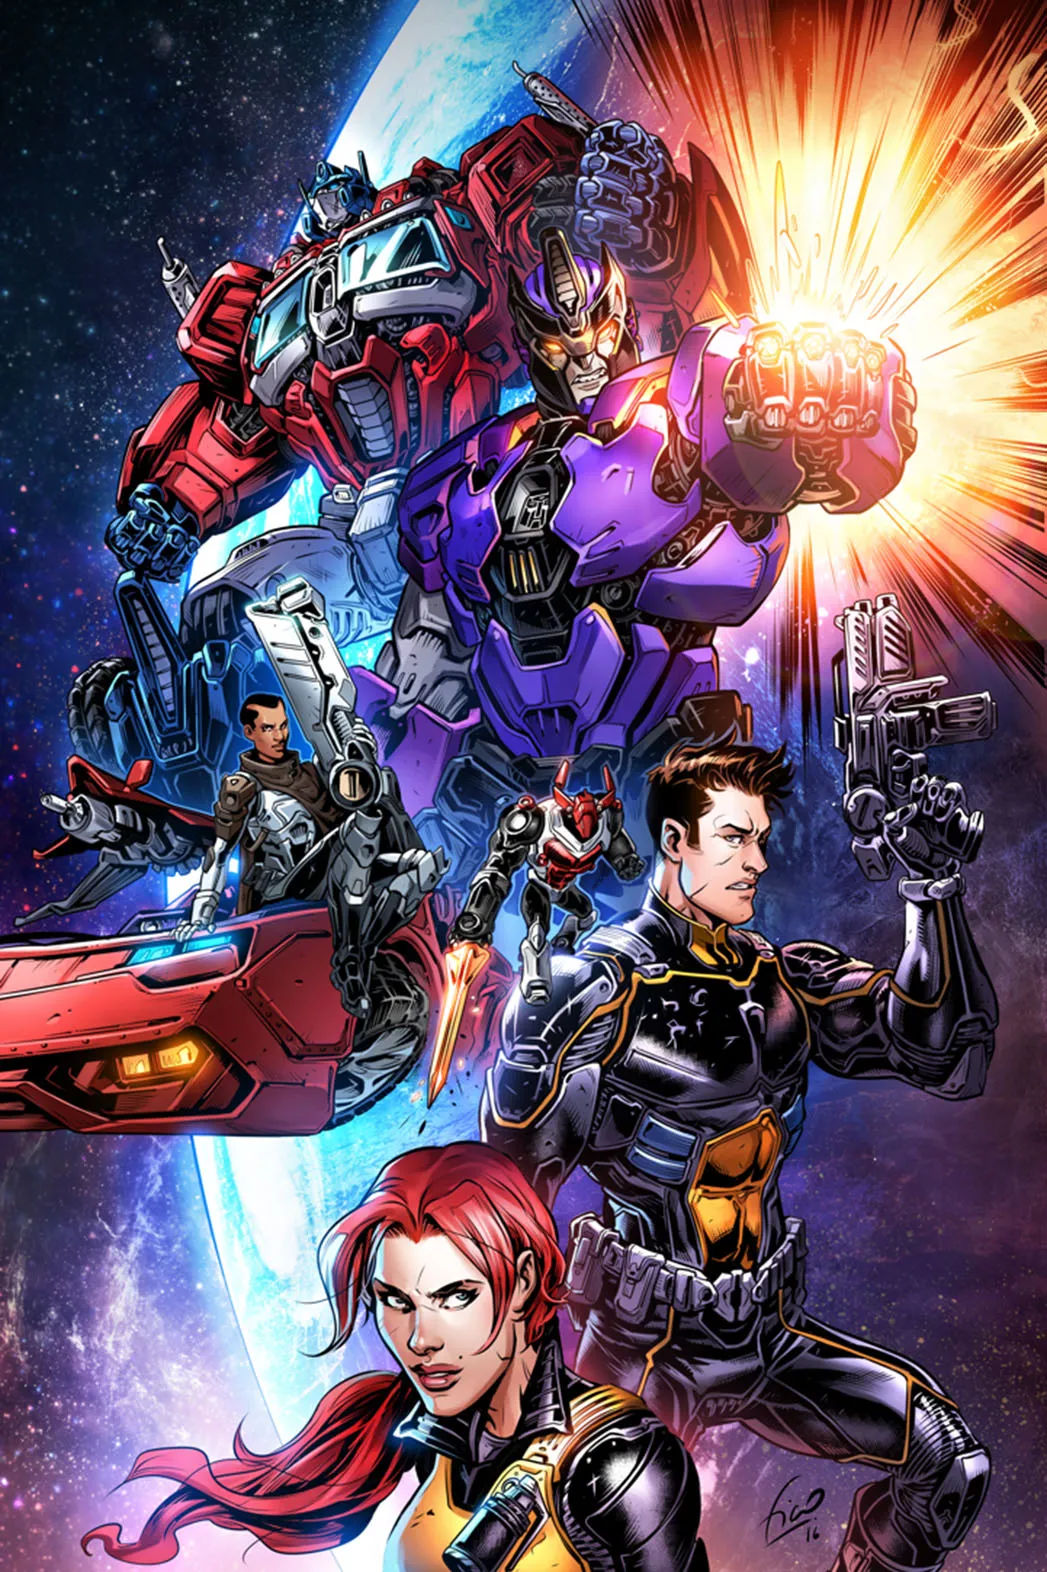 Annunciato il crossover tra Transformers e G.I. Joe